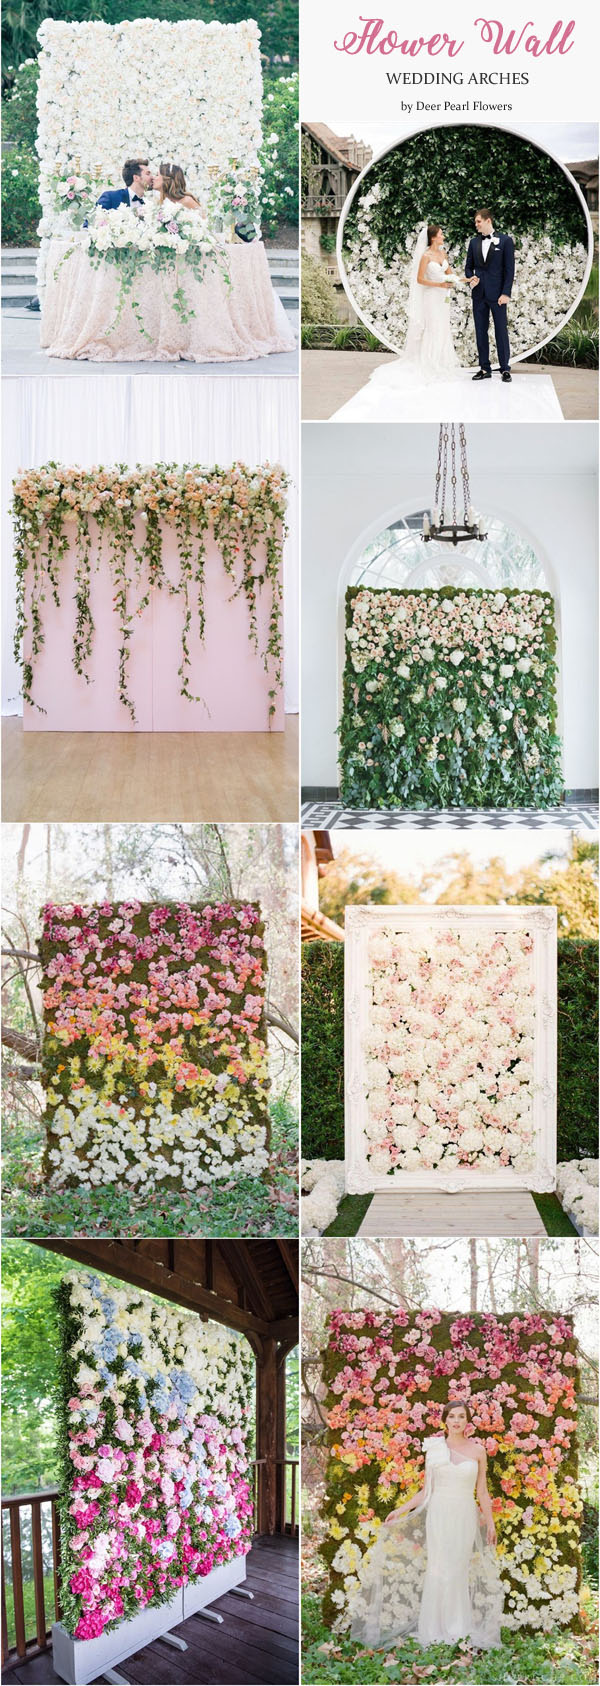 Flower wall wedding arches & alter wedding ideas